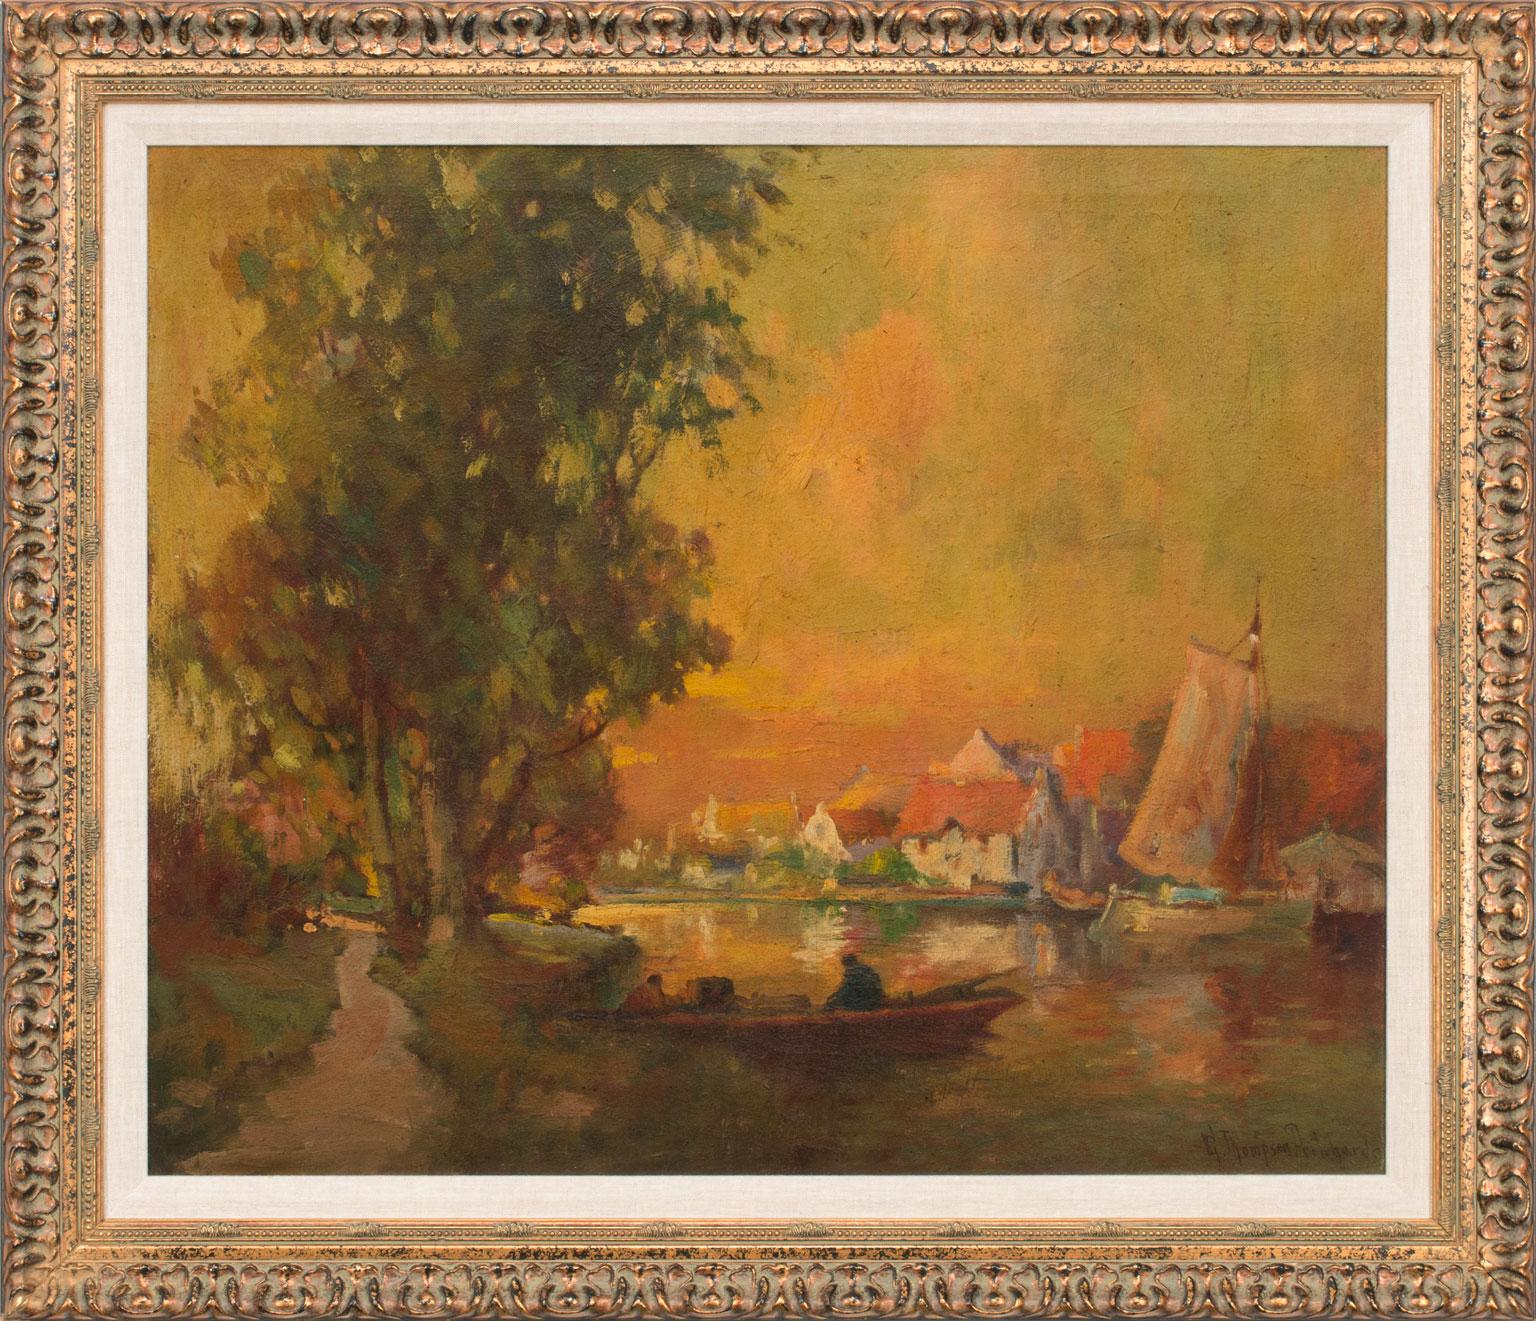 Untitled Riverscape, une huile originale sur toile de George Thompson Pritchard, est une pièce pour le vrai collectionneur. La nature impressionnante et apaisante de cette peinture en plein air vous attire dans la scène comme si vous vous trouviez